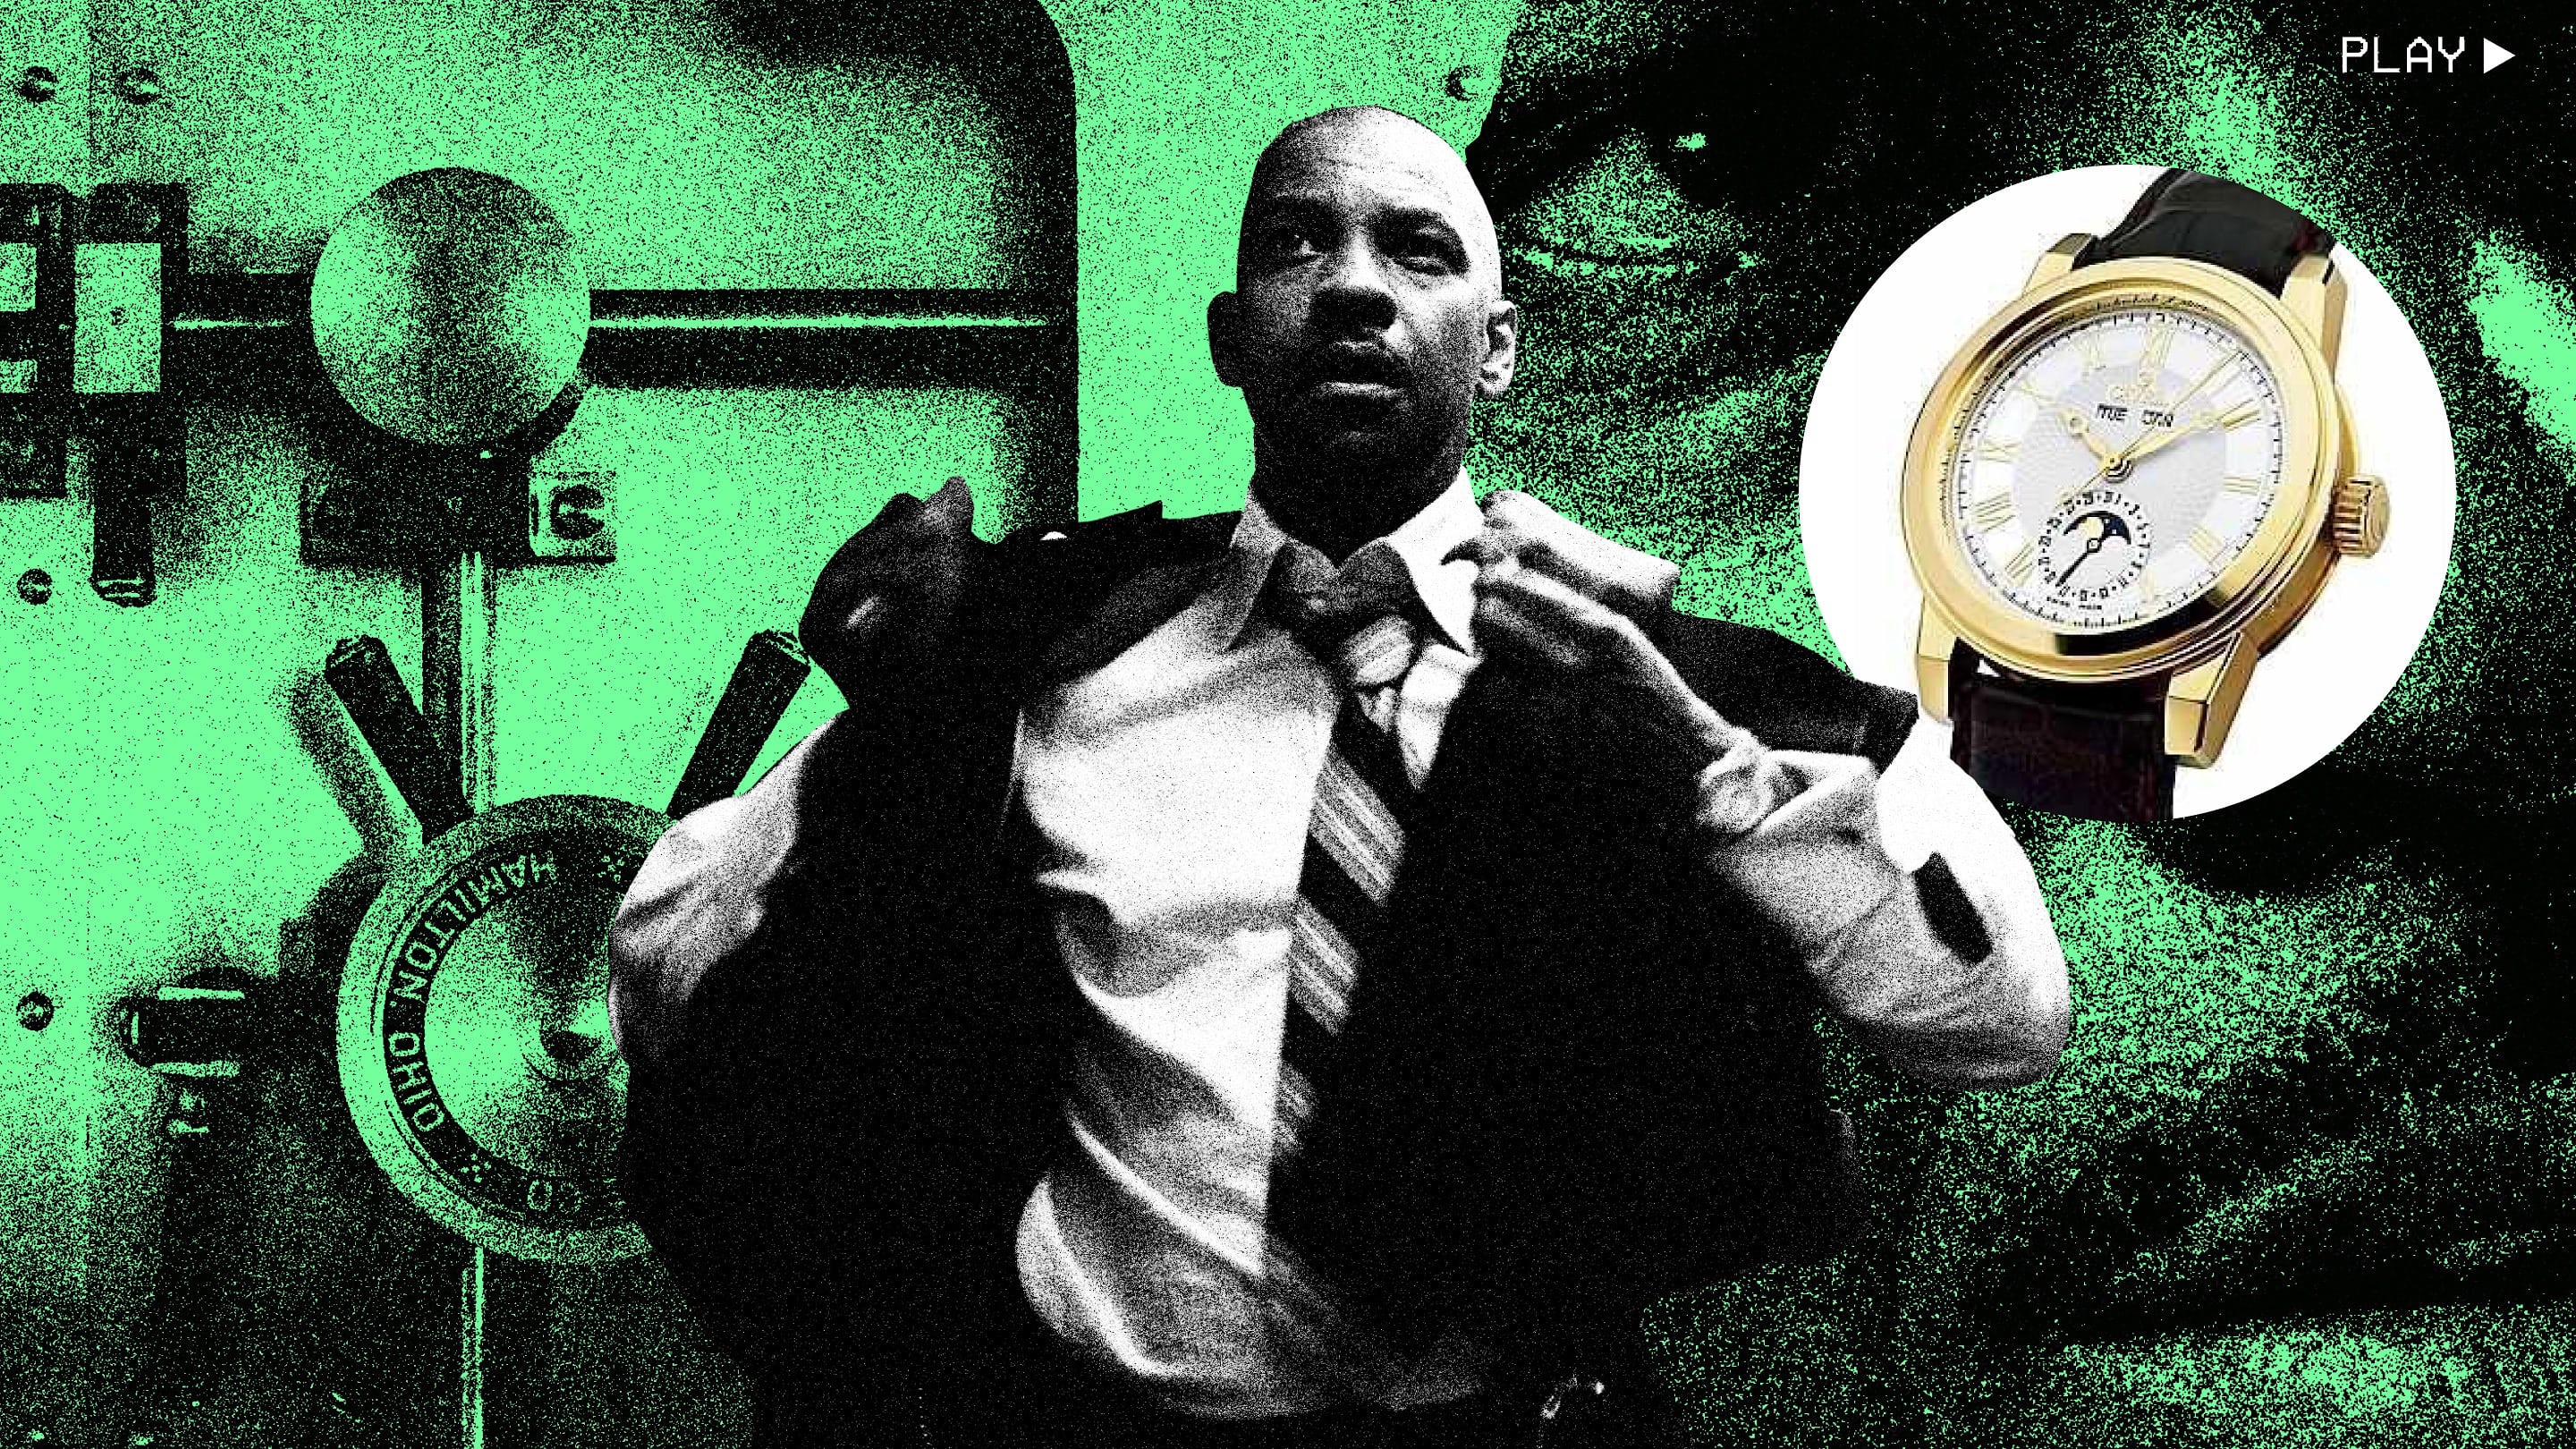 看电影丹泽尔华盛顿在斯派克李的“内心男人”中佩戴了一块充满纽约灵魂的金表